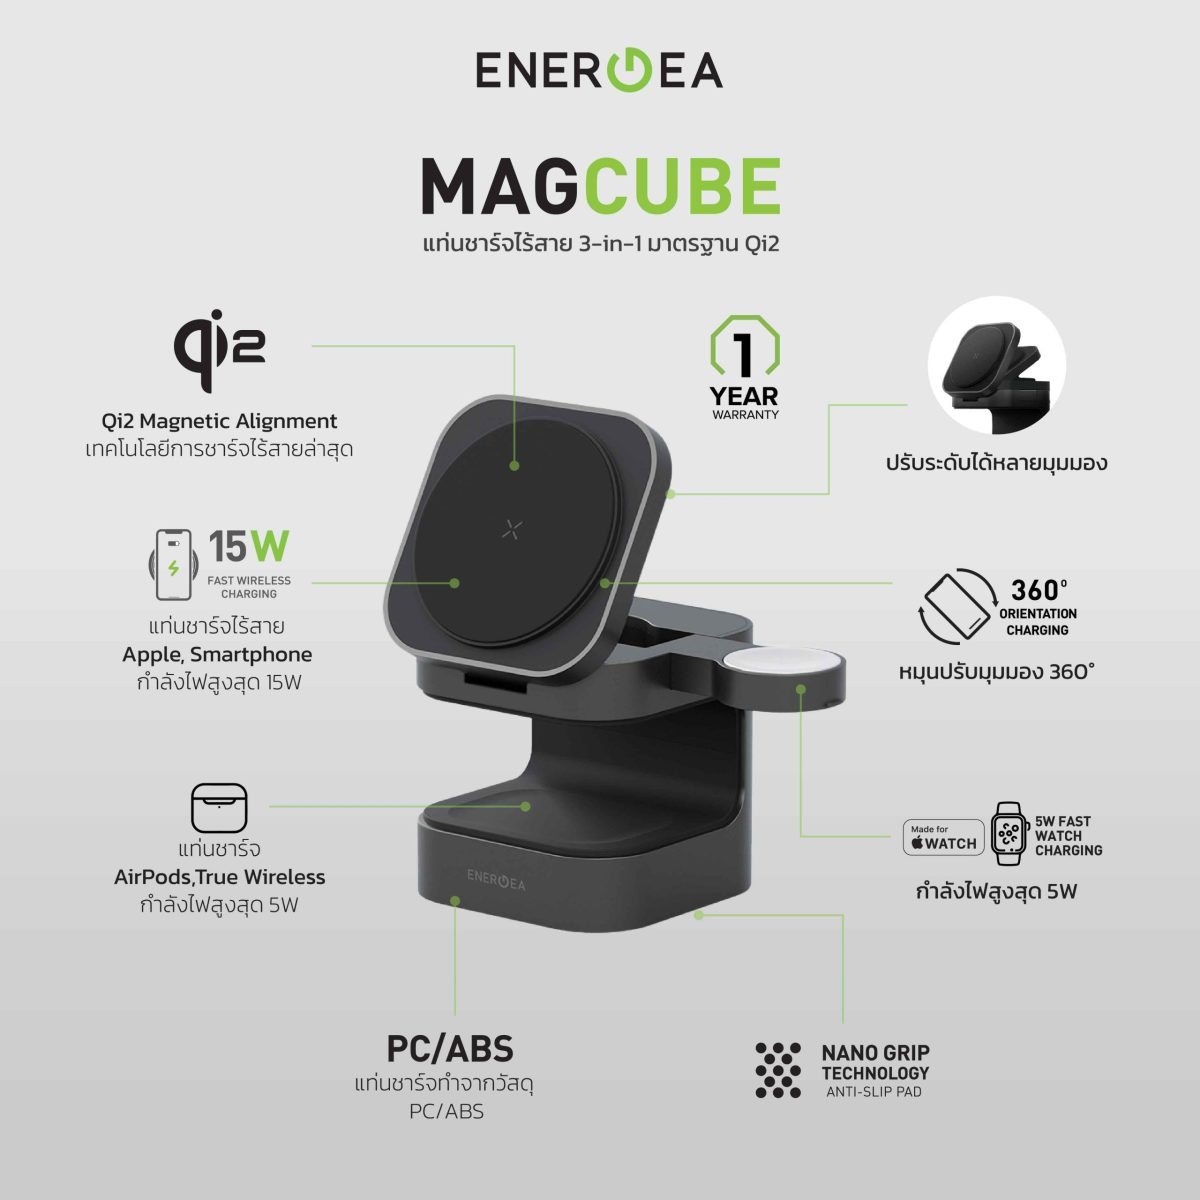 อาร์ทีบีฯ เปิดตัว MagCube แท่นชาร์จแม่เหล็กไร้สาย 3-in-1 สุดจิ๋ว จากแบรนด์ Energea มาพร้อมมาตรฐาน Qi2 ช่วยให้ชาร์จได้เร็วขึ้นถึง